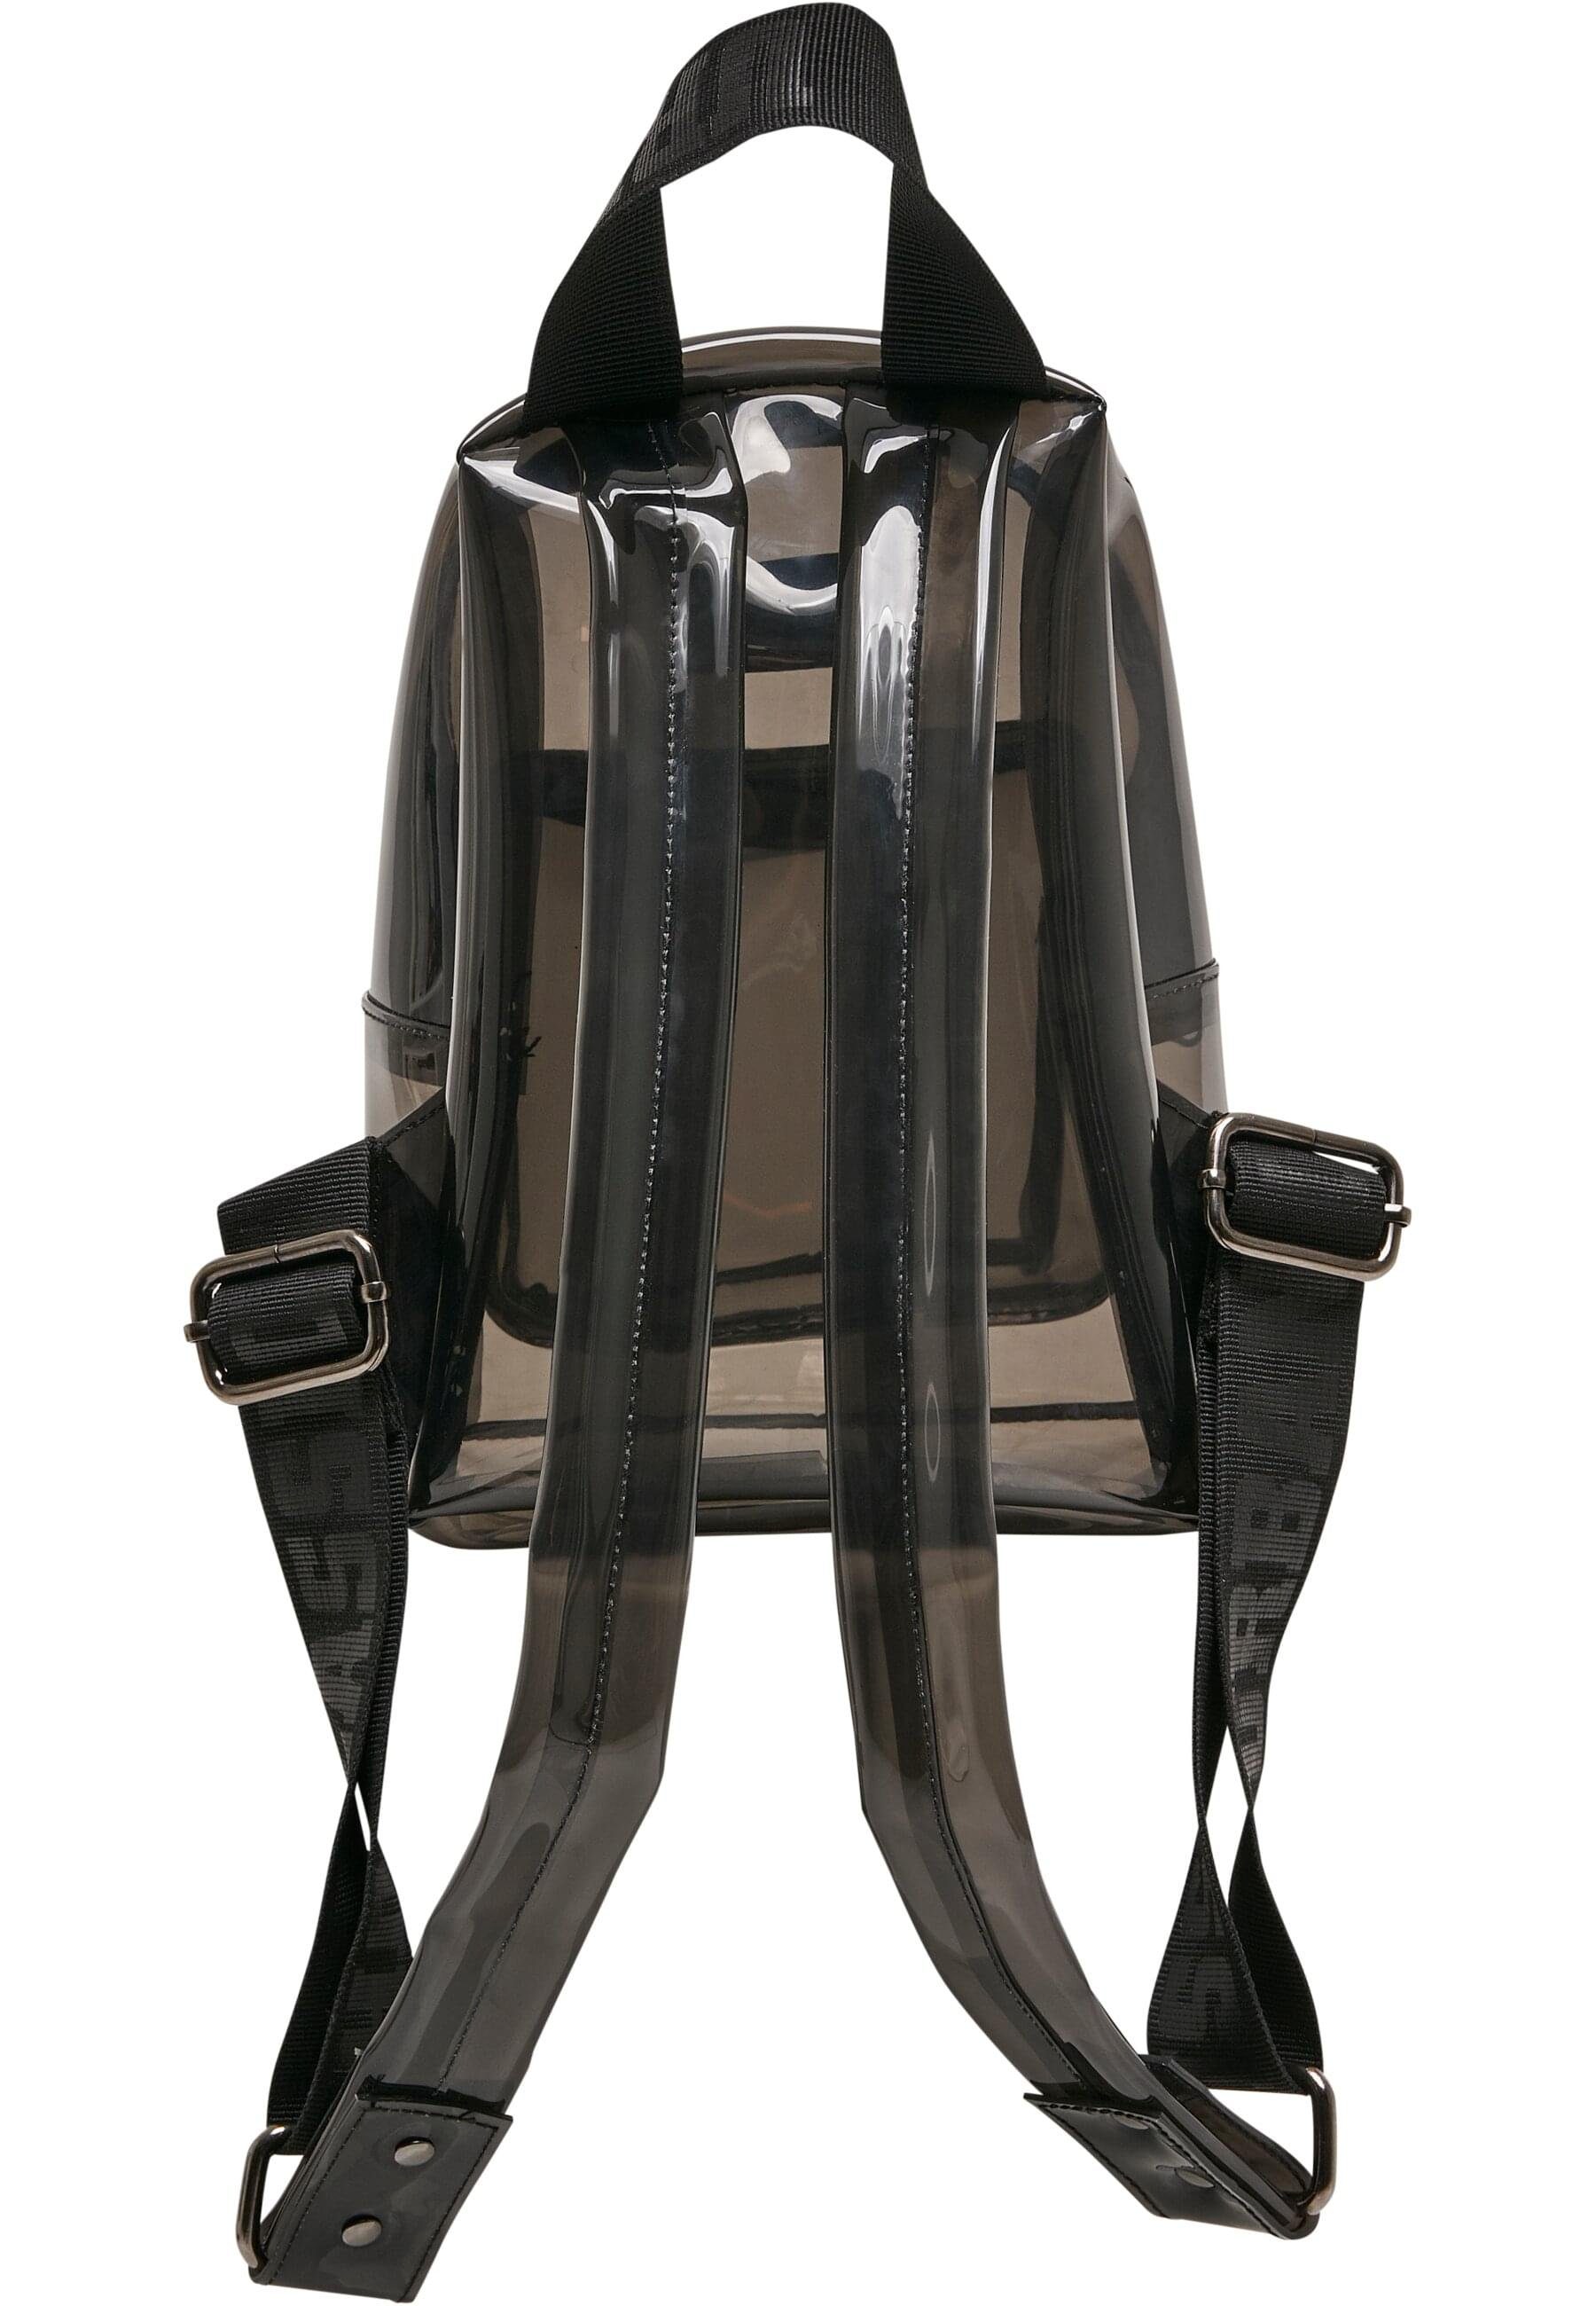 Backpack Rucksack Transparent Unisex CLASSICS Mini URBAN